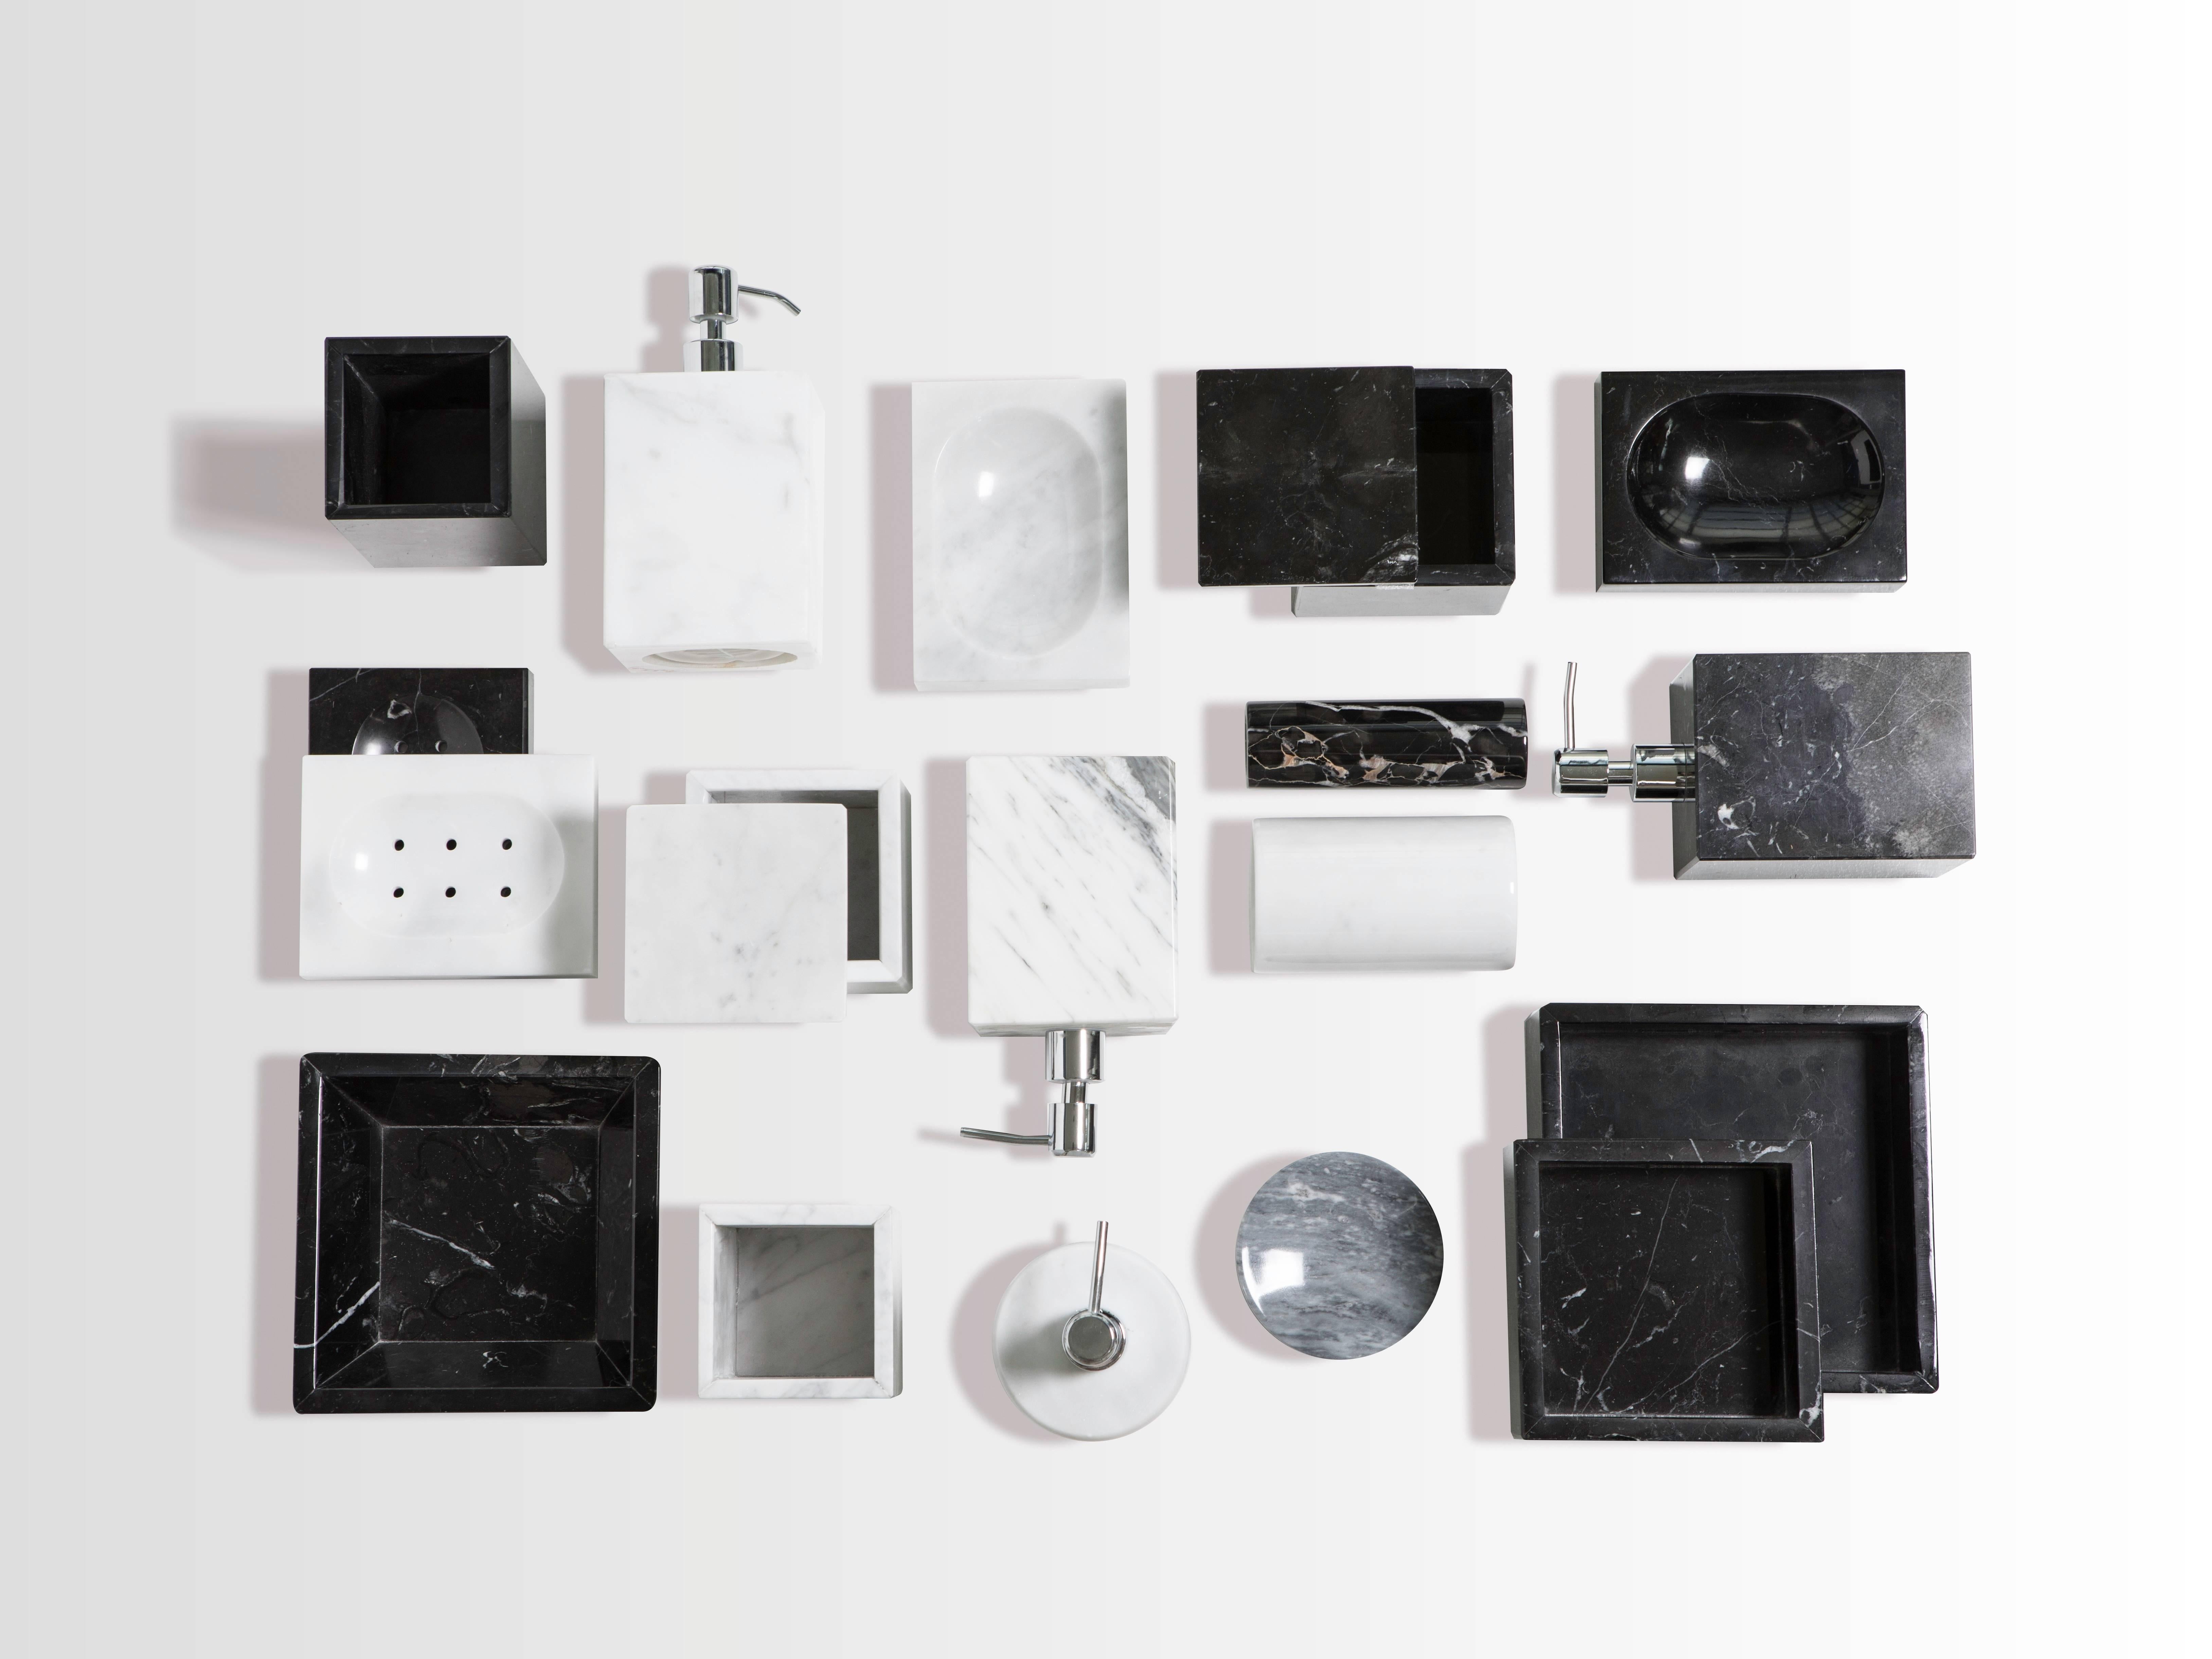 Ein quadratisches Set für das Badezimmer aus weißem Carrara-Marmor, bestehend aus: Ein Seifenspender (9 x 9 x 19 cm), eine Seifenschale (10 x 13 x 2 cm), ein Zahnbürstenhalter (8,5 x 8,5 x 12 cm), ein Dosenhalter mit Deckel (9,5 x 9,5 x 9,5